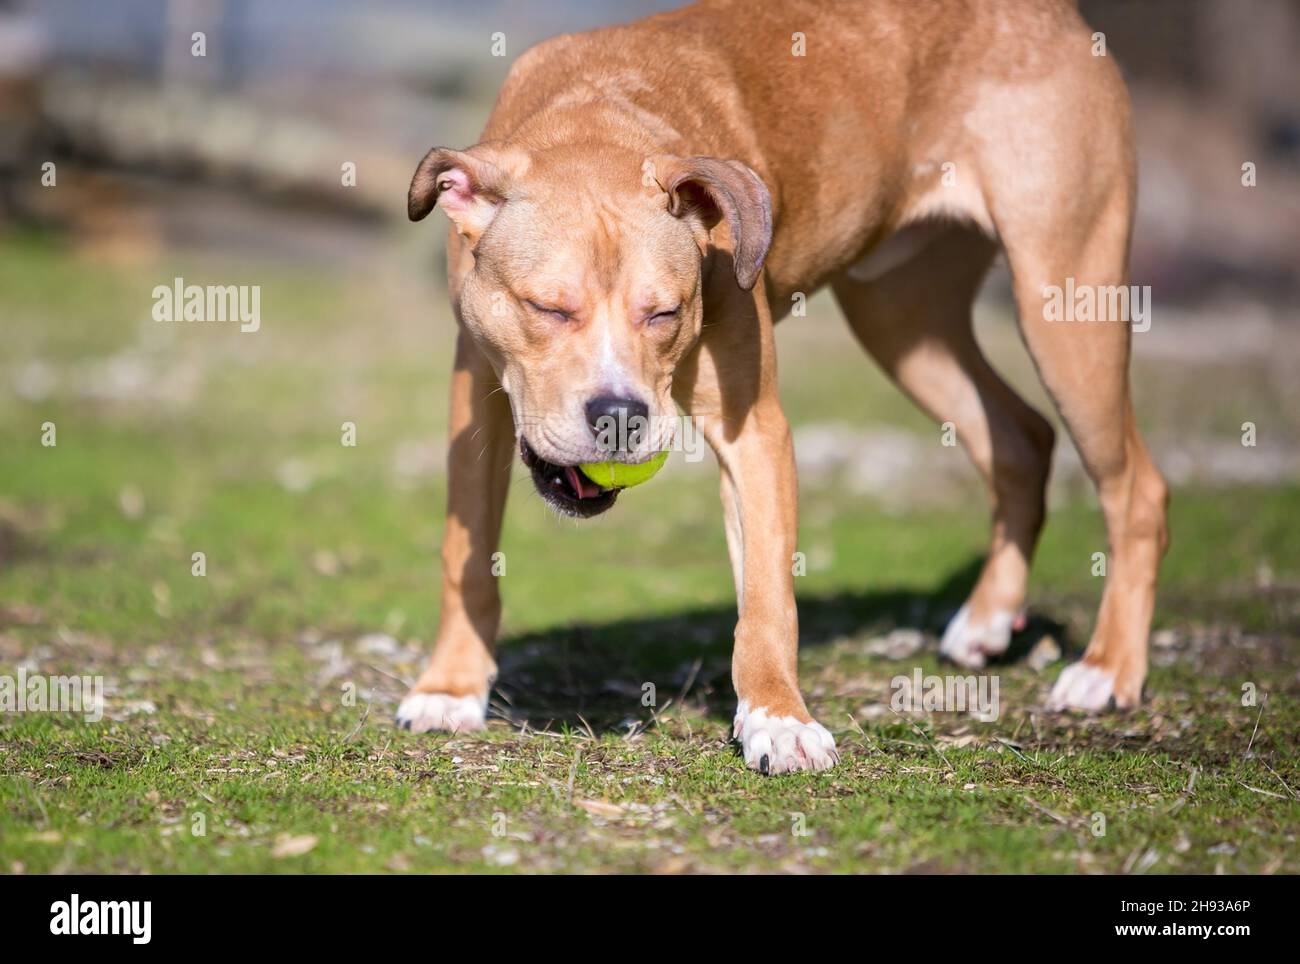 Un perro de raza mixta Retriever jugando con una pelota al aire libre Foto de stock